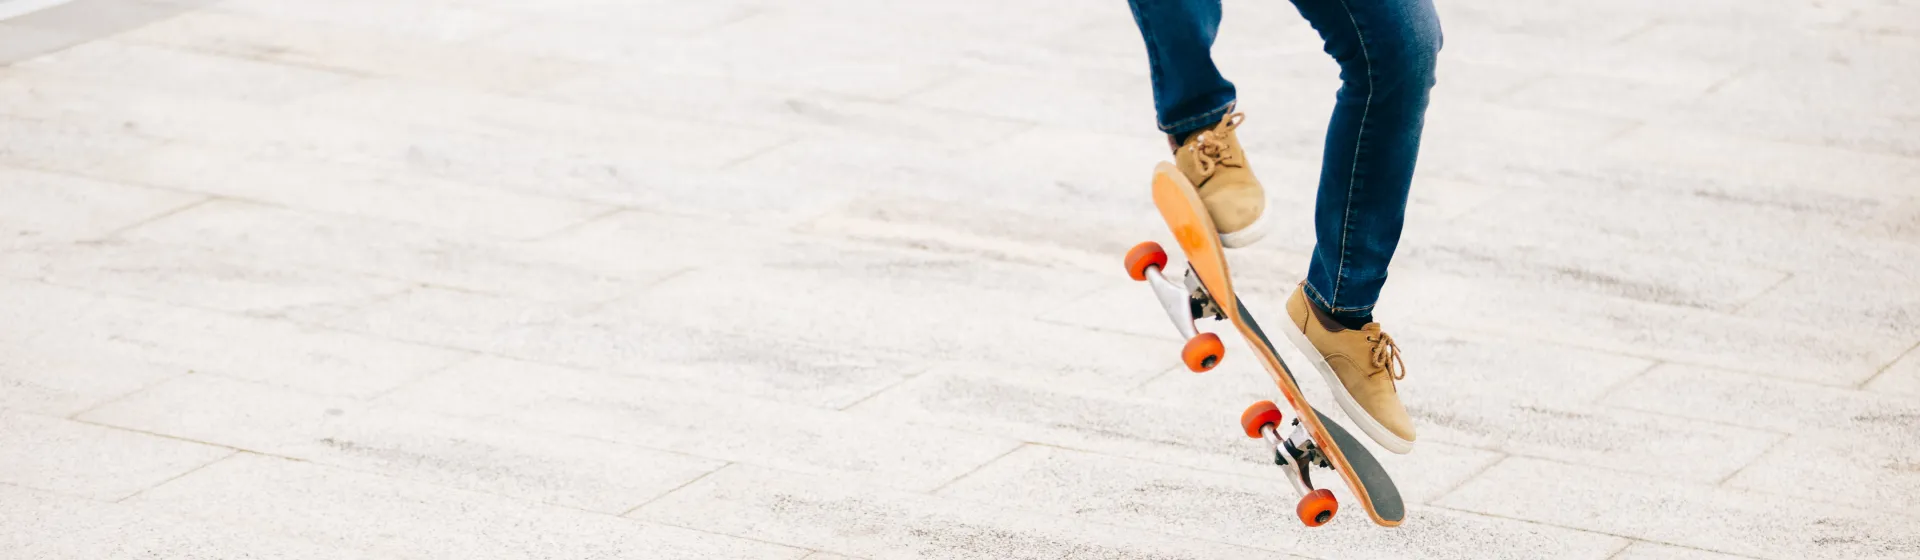 Melhor tênis de skate de 2022: 5 modelos para comprar